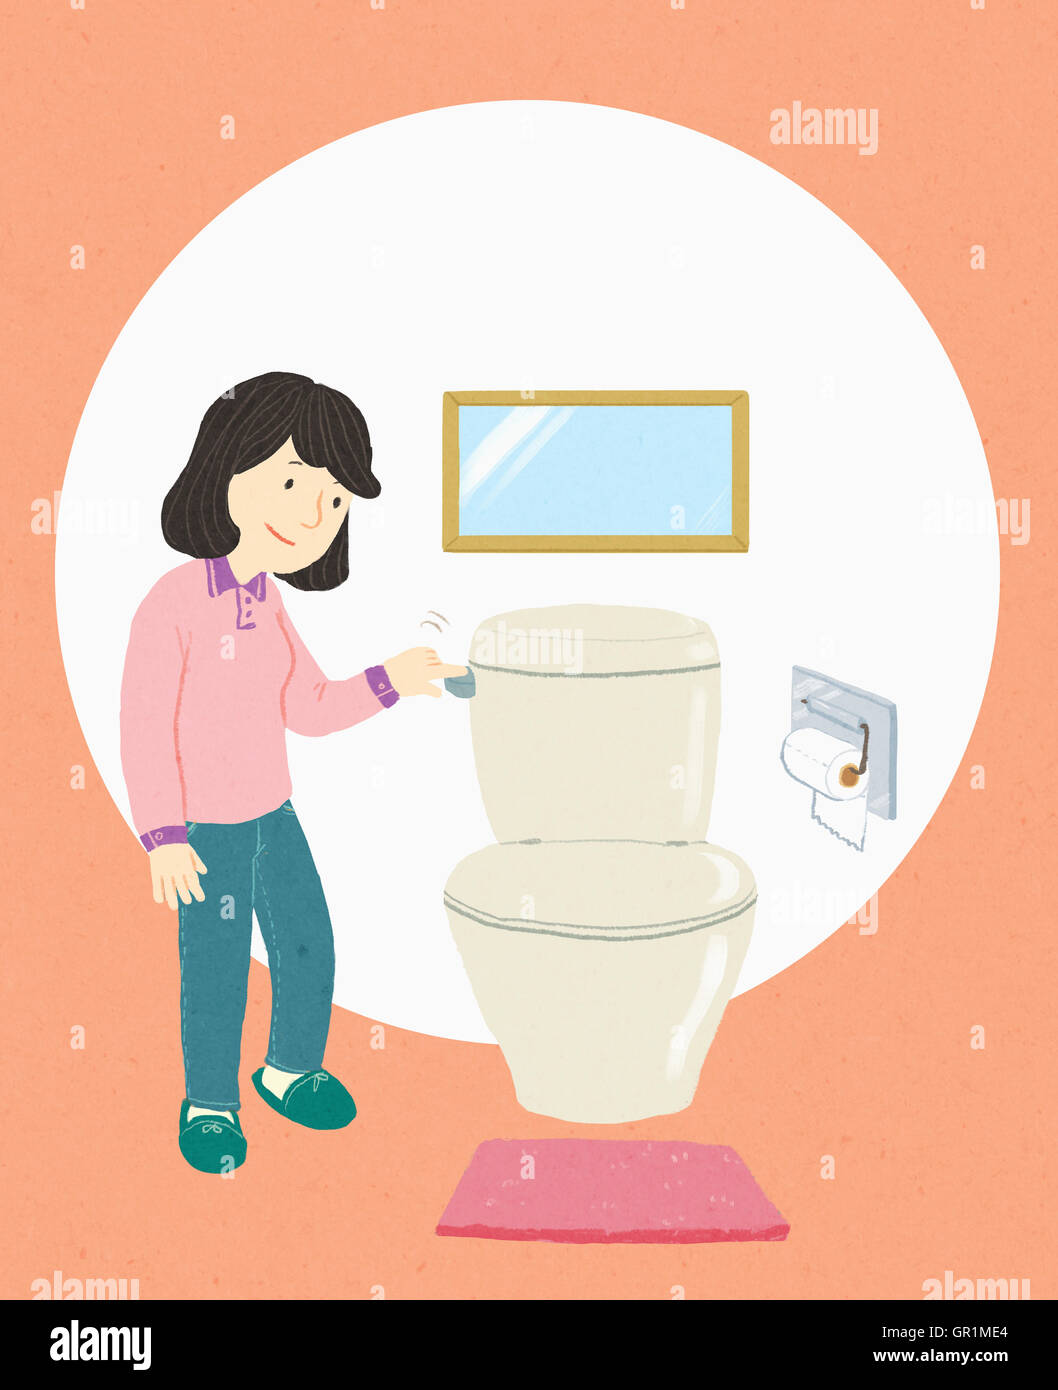 Smiling woman flushing the toilet Stock Photo